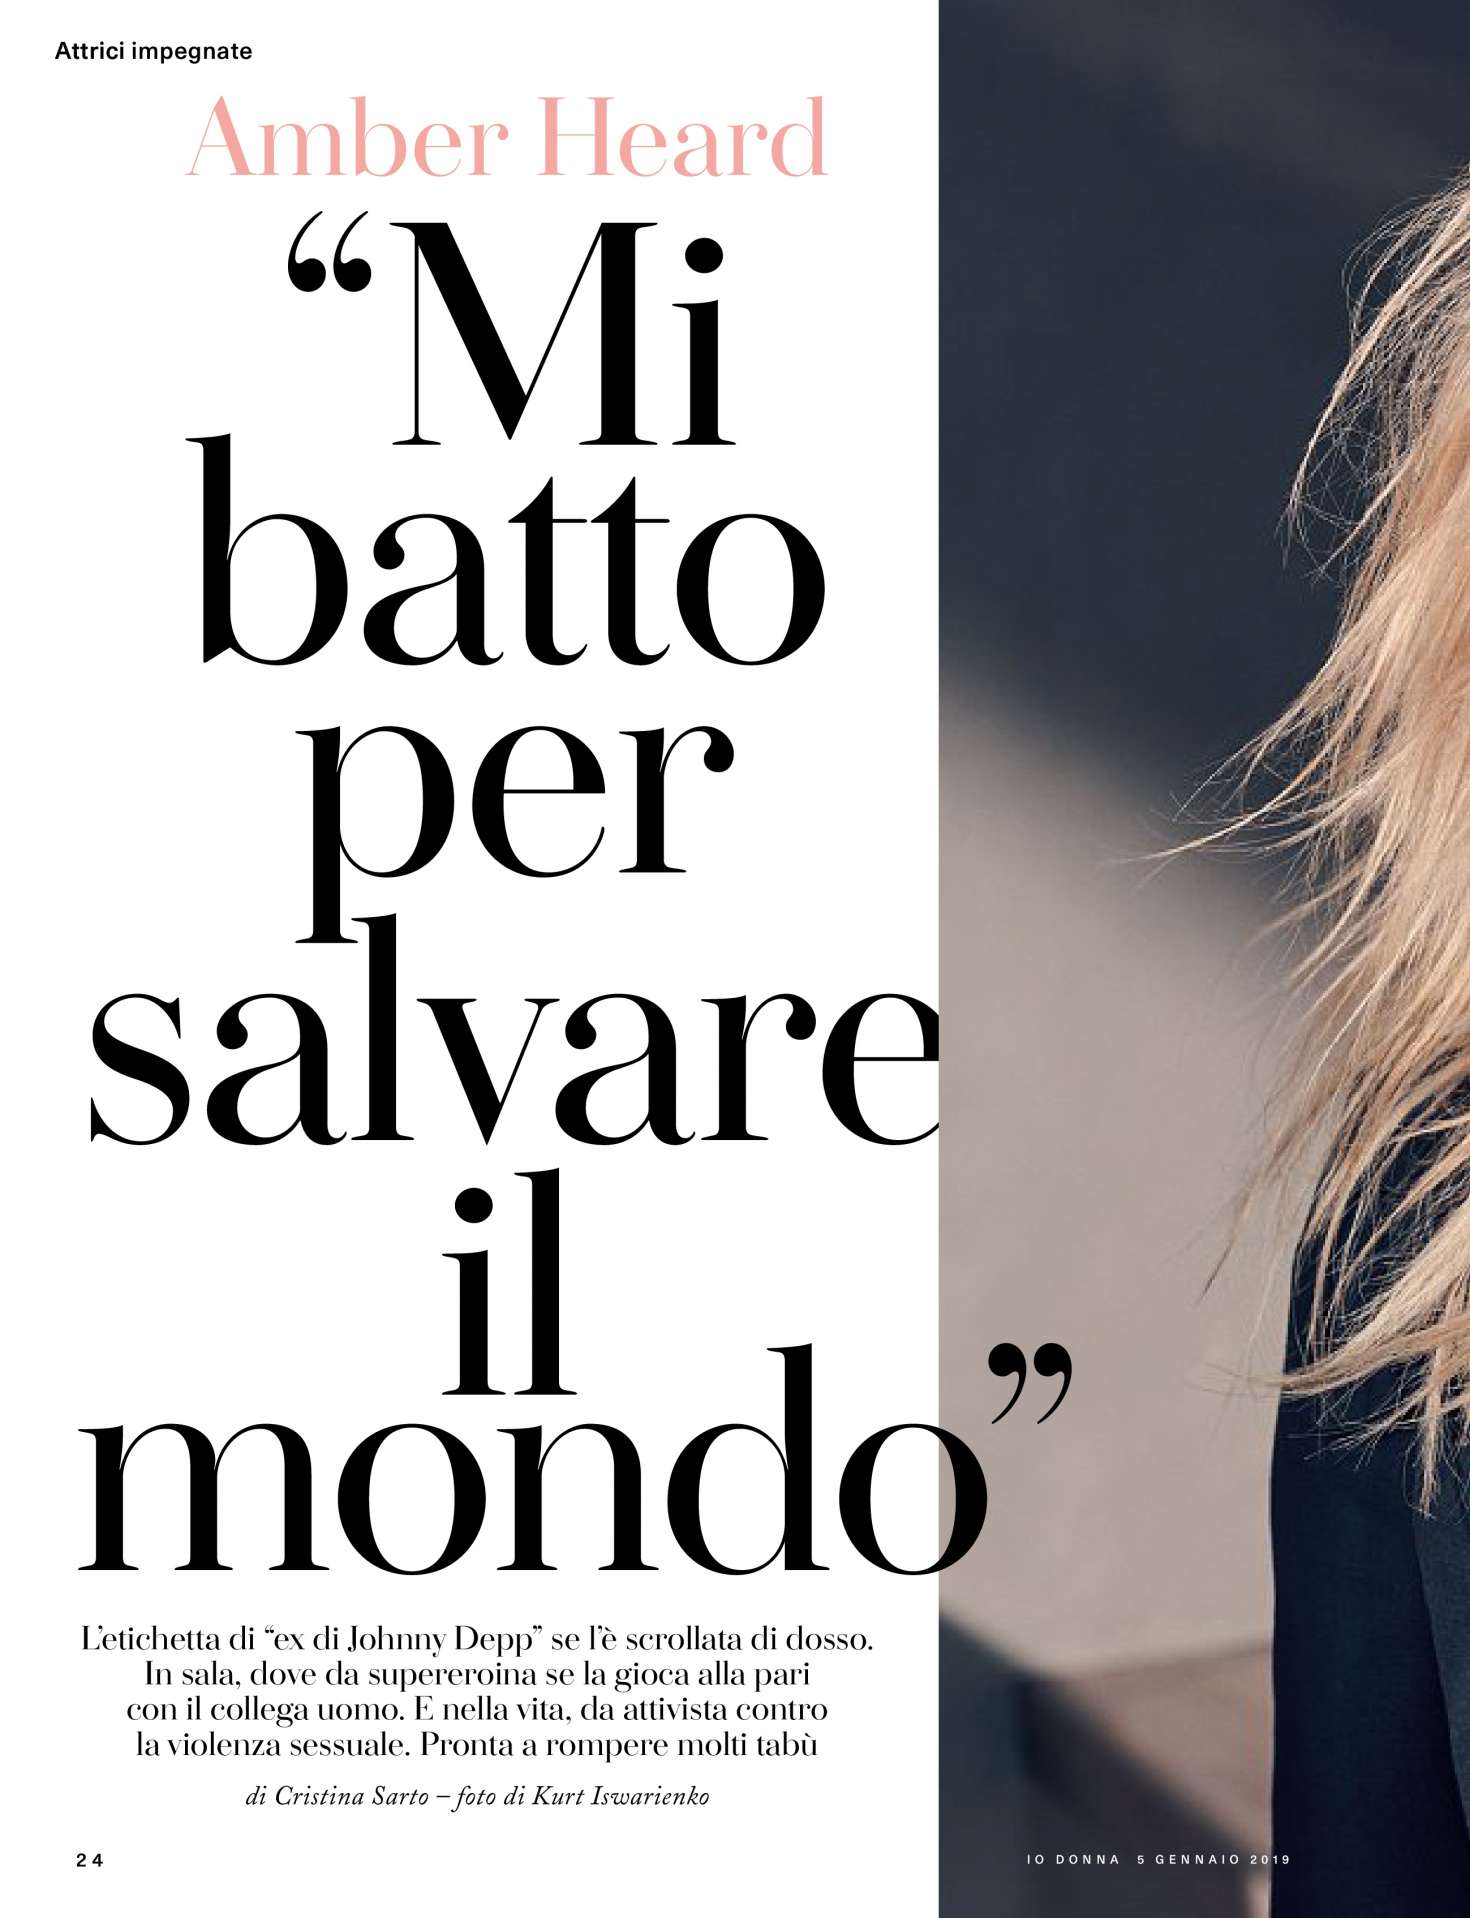 Amber Heard â€“ Io Donna del Corriere della Sera (January 2019)